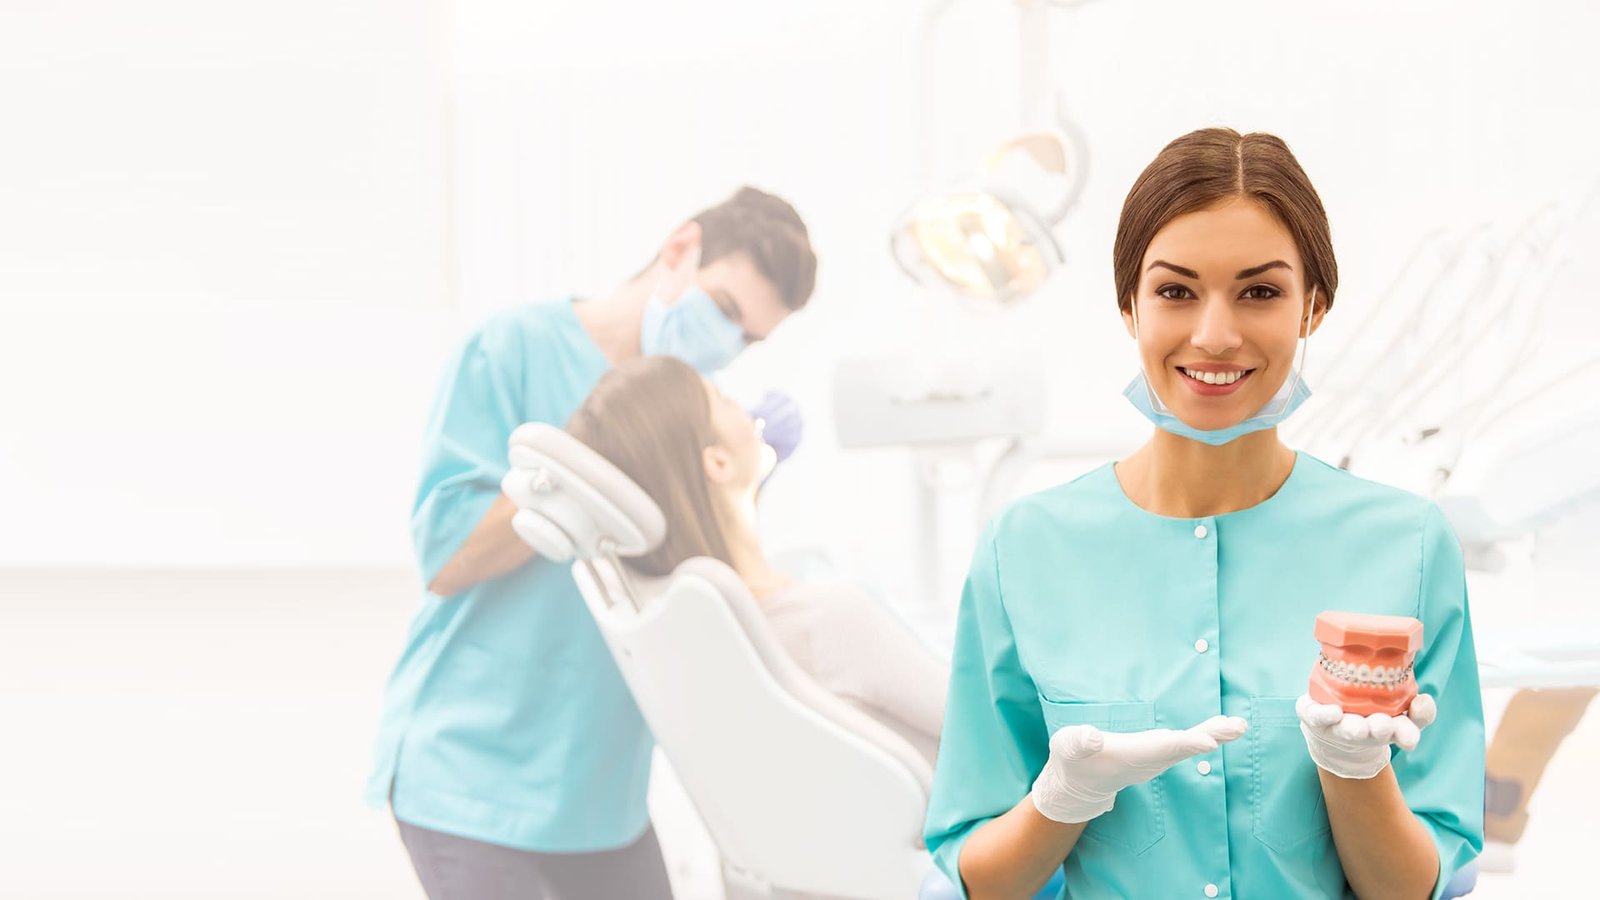 Tutto quello che devi sapere sugli impianti dentali